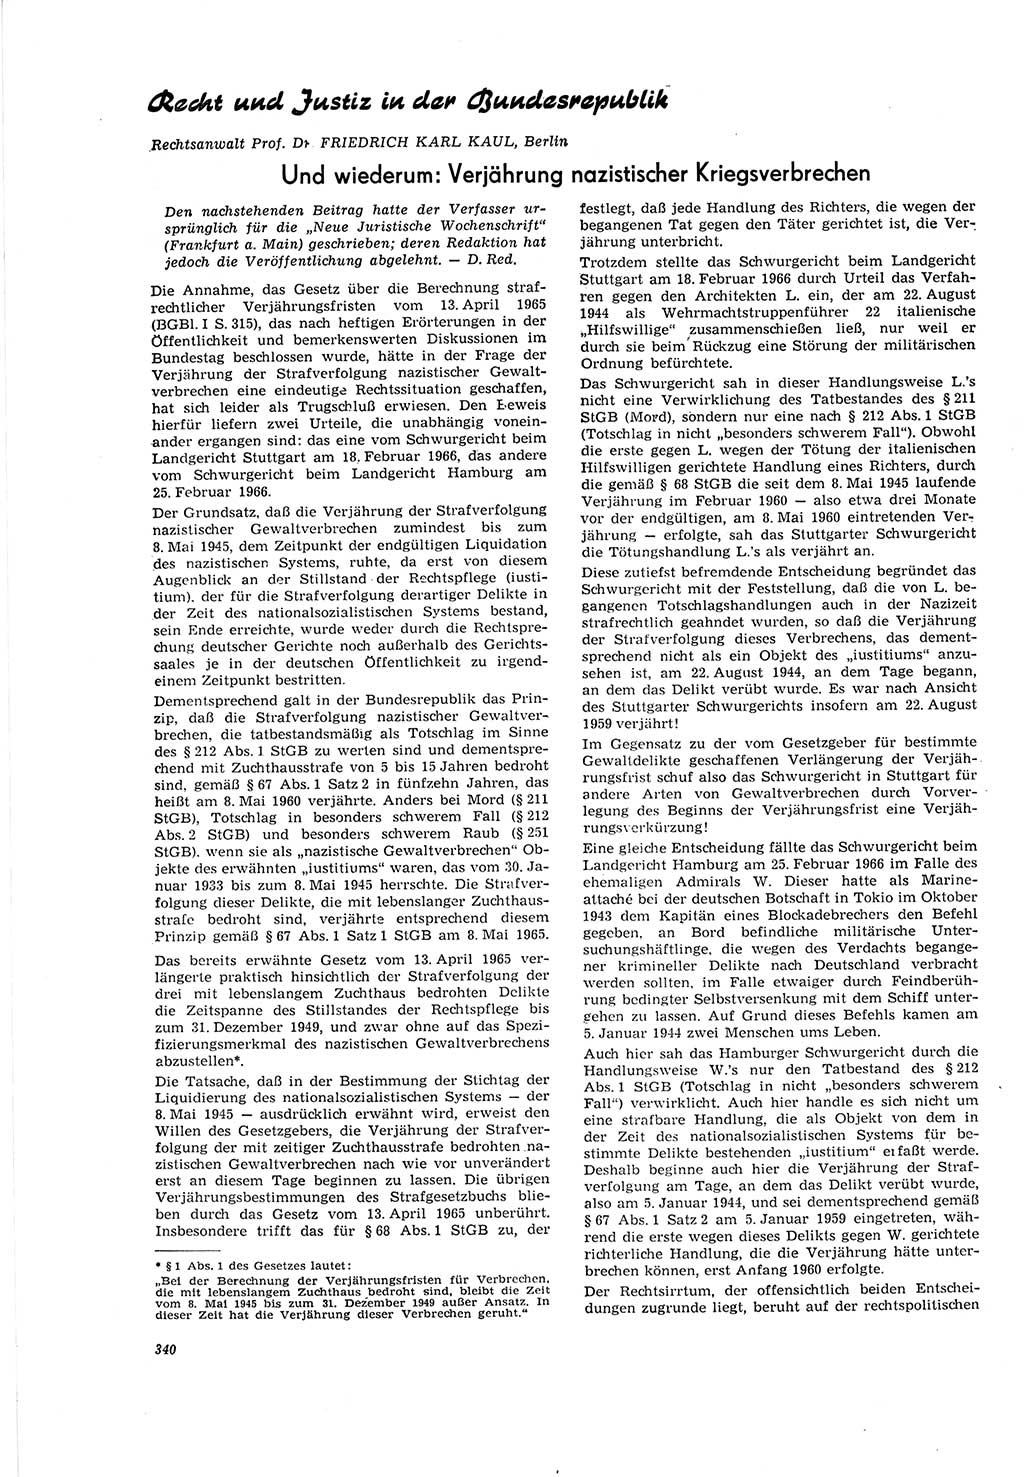 Neue Justiz (NJ), Zeitschrift für Recht und Rechtswissenschaft [Deutsche Demokratische Republik (DDR)], 20. Jahrgang 1966, Seite 340 (NJ DDR 1966, S. 340)